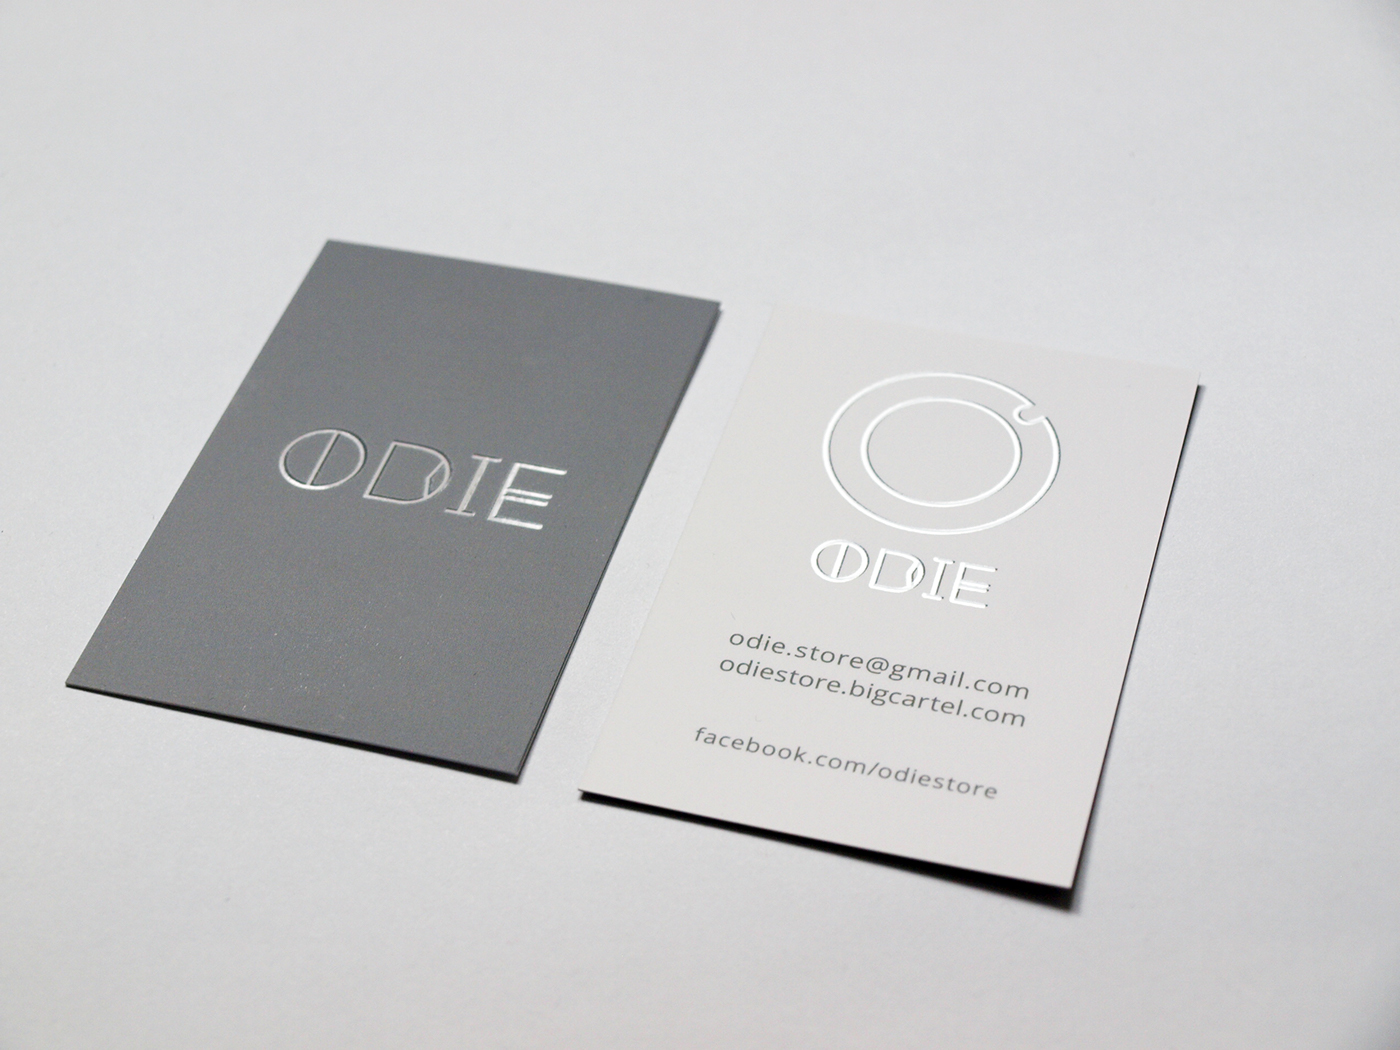 brand Odie clothes store moda marka odzieżowa streetwear ubrania logo wear simple clear ID identyfication